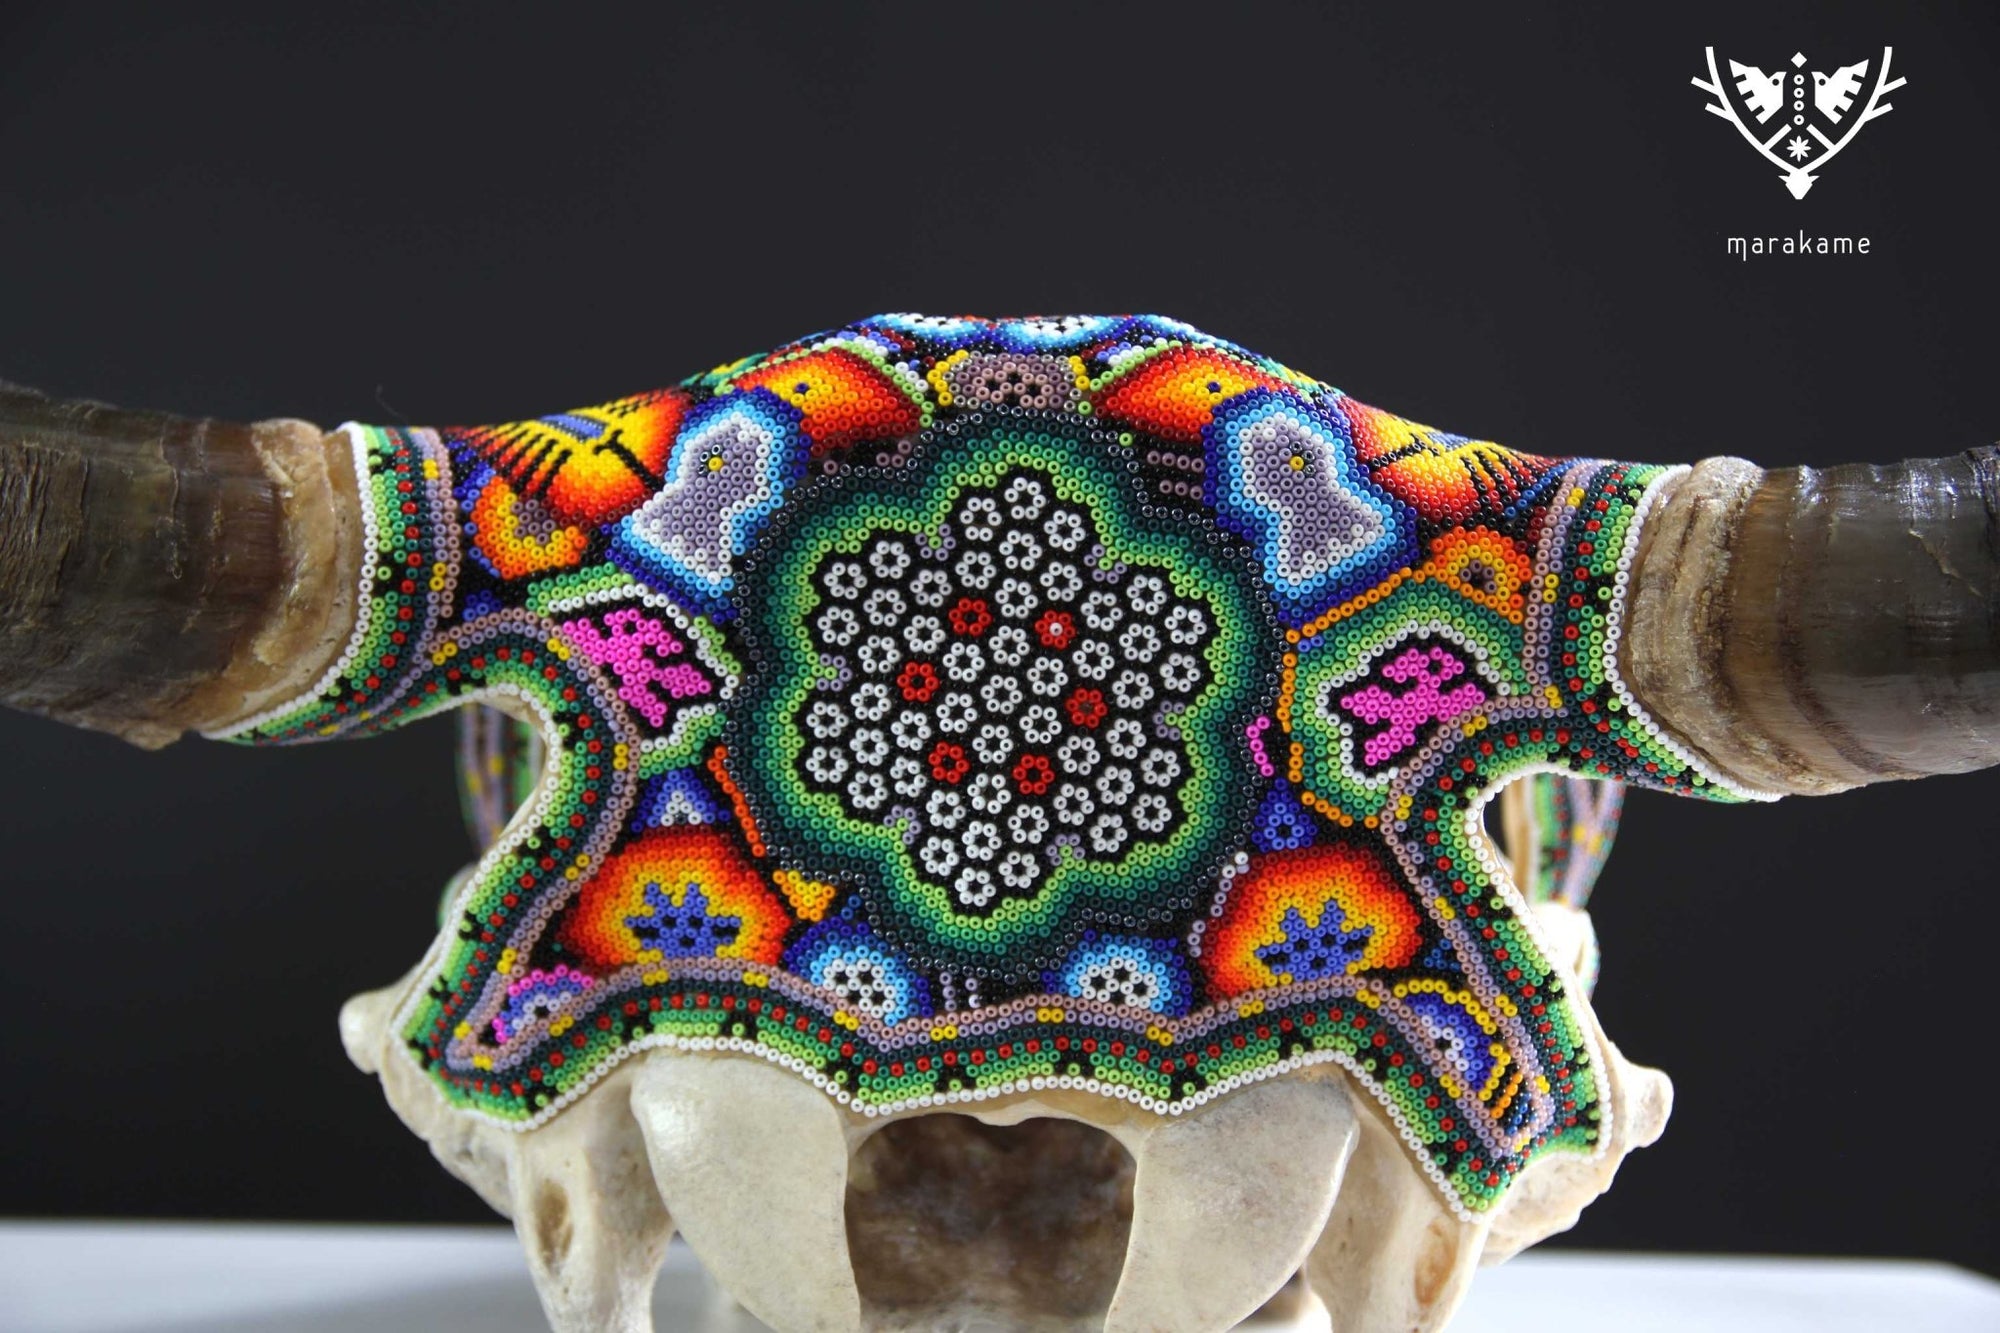 Crâne de vache Huichol Art - Xurawe wexik+a - Huichol Art - Marakame